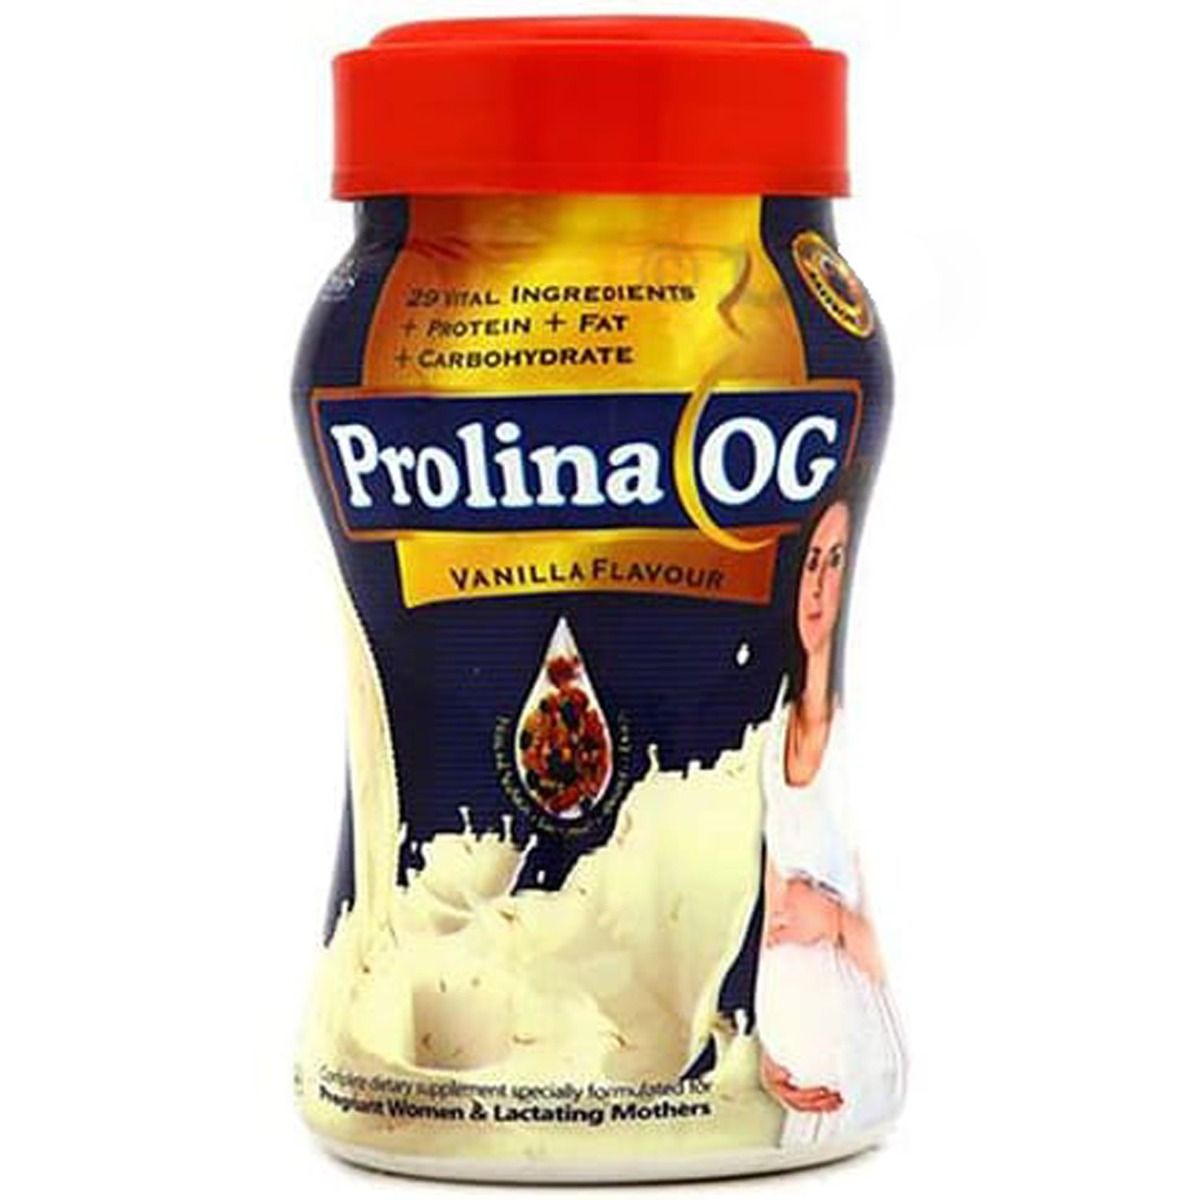 Prolina OG Powder, 200 gm, Pack of 1 